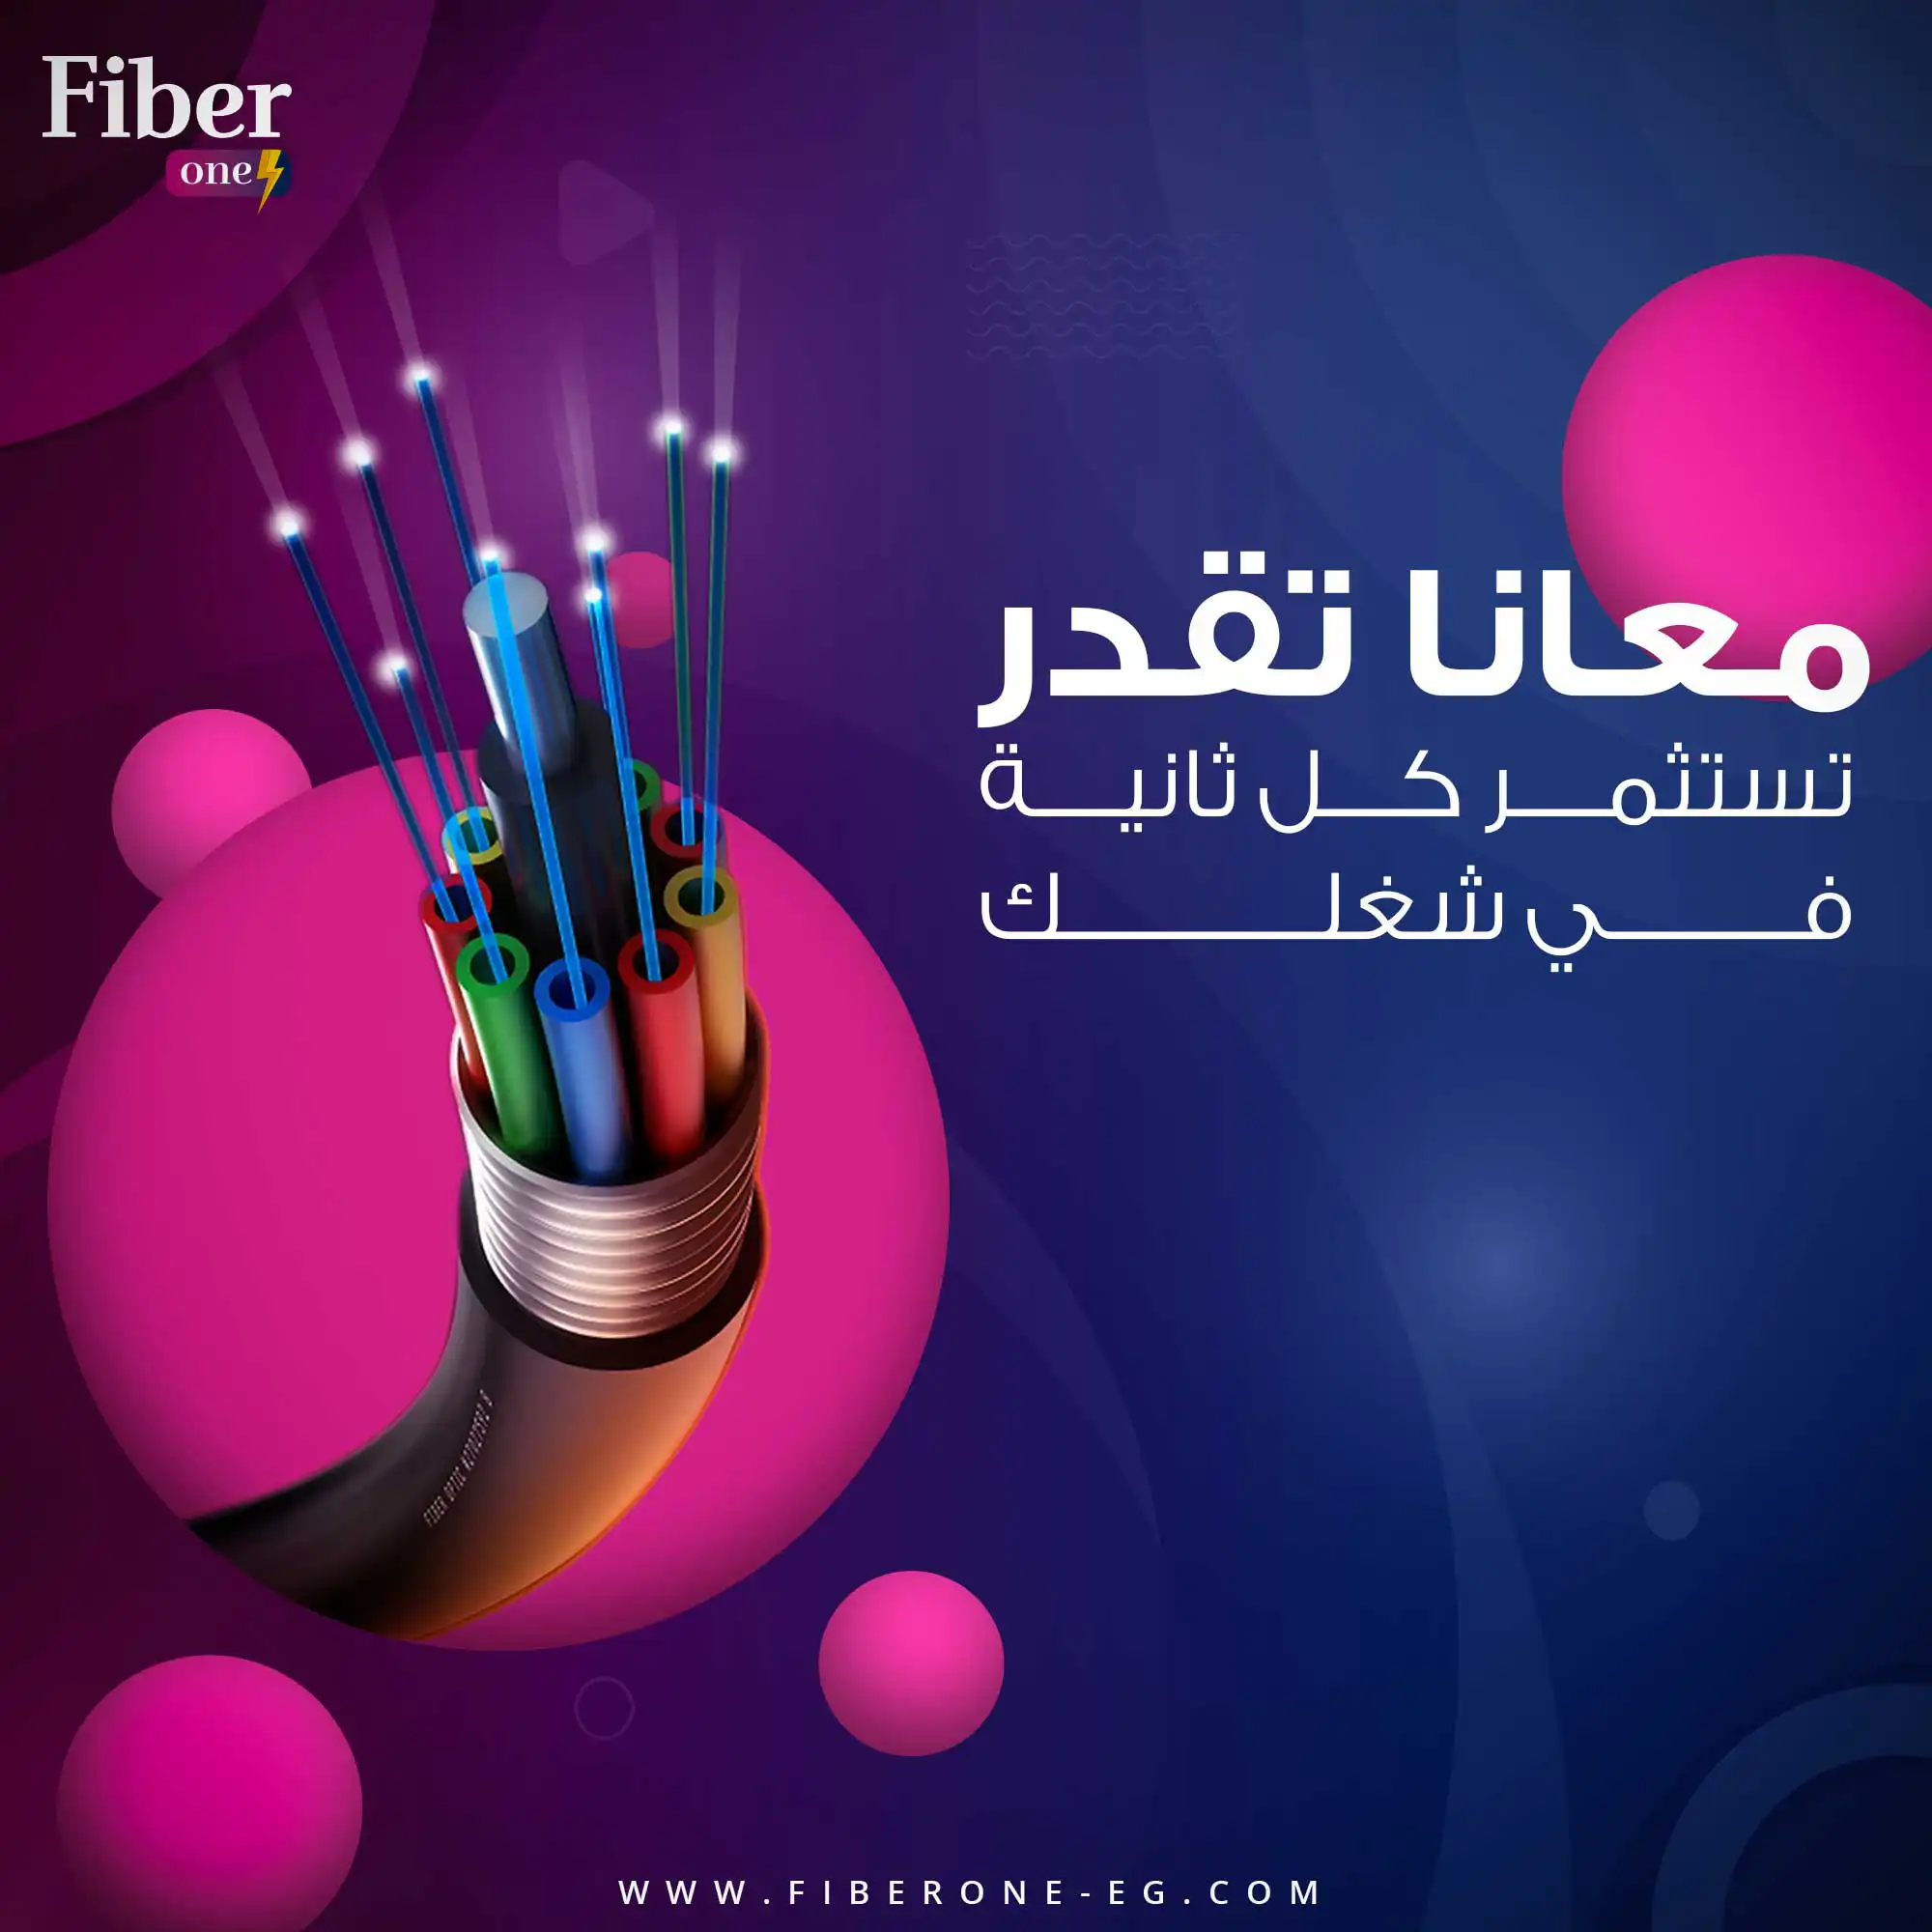 fiber one social media 8